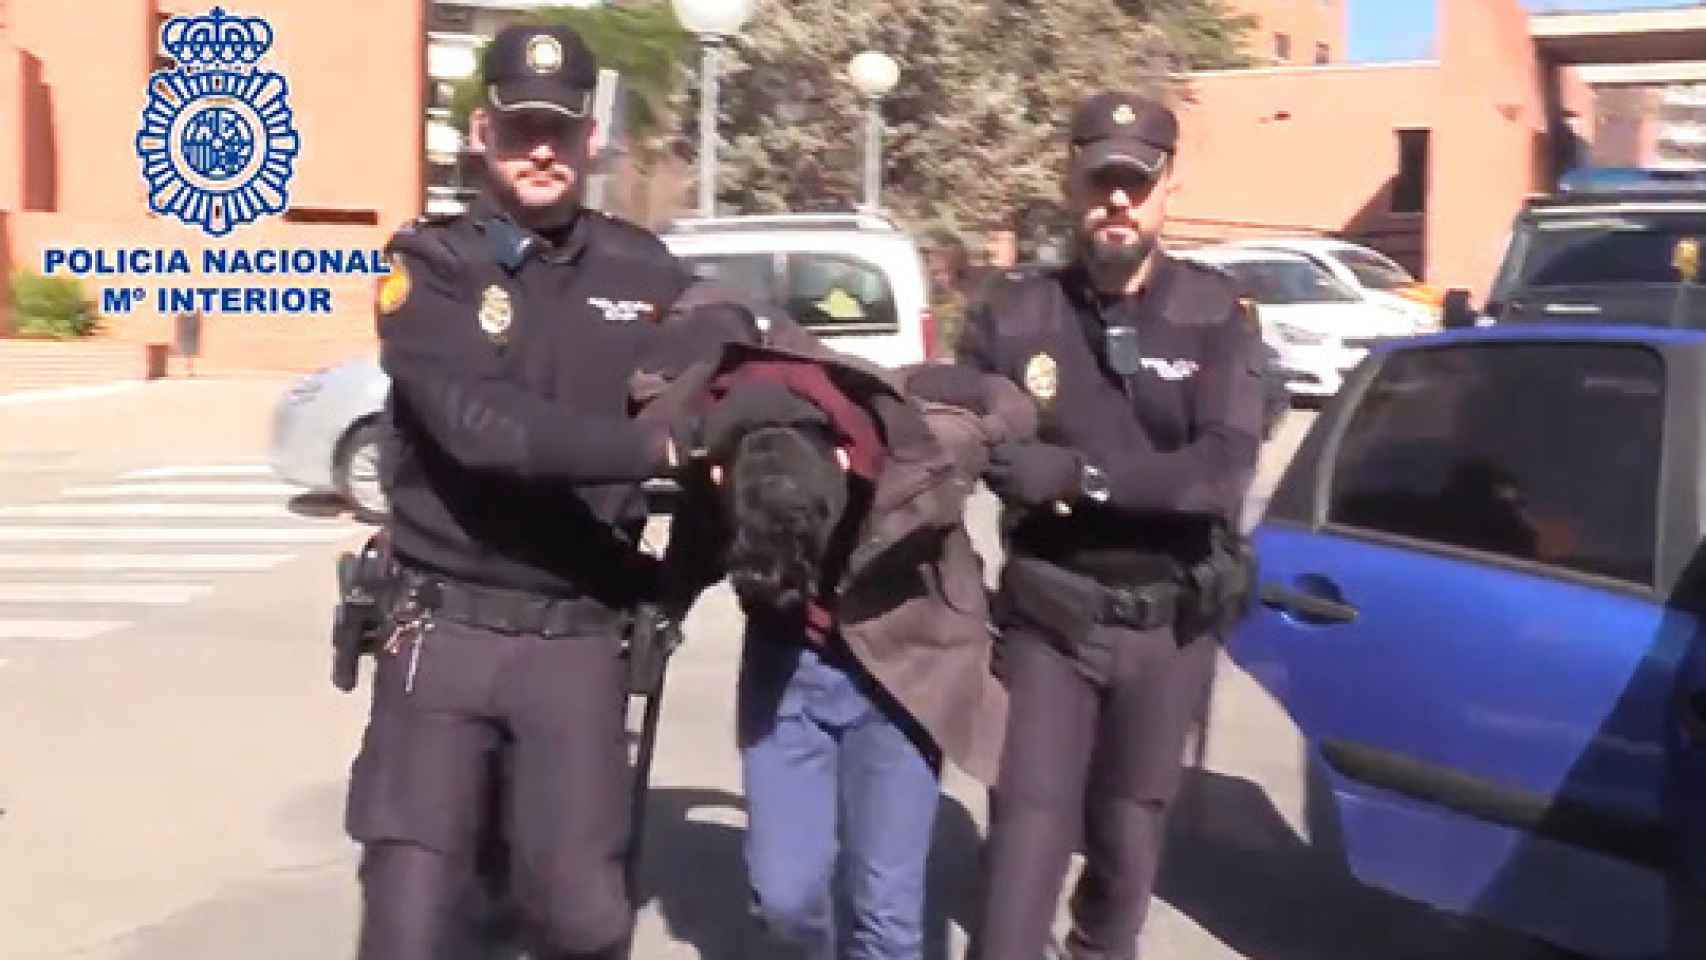 Imagen del día de la detención del presunto parricida difundida por la Policía Nacional.